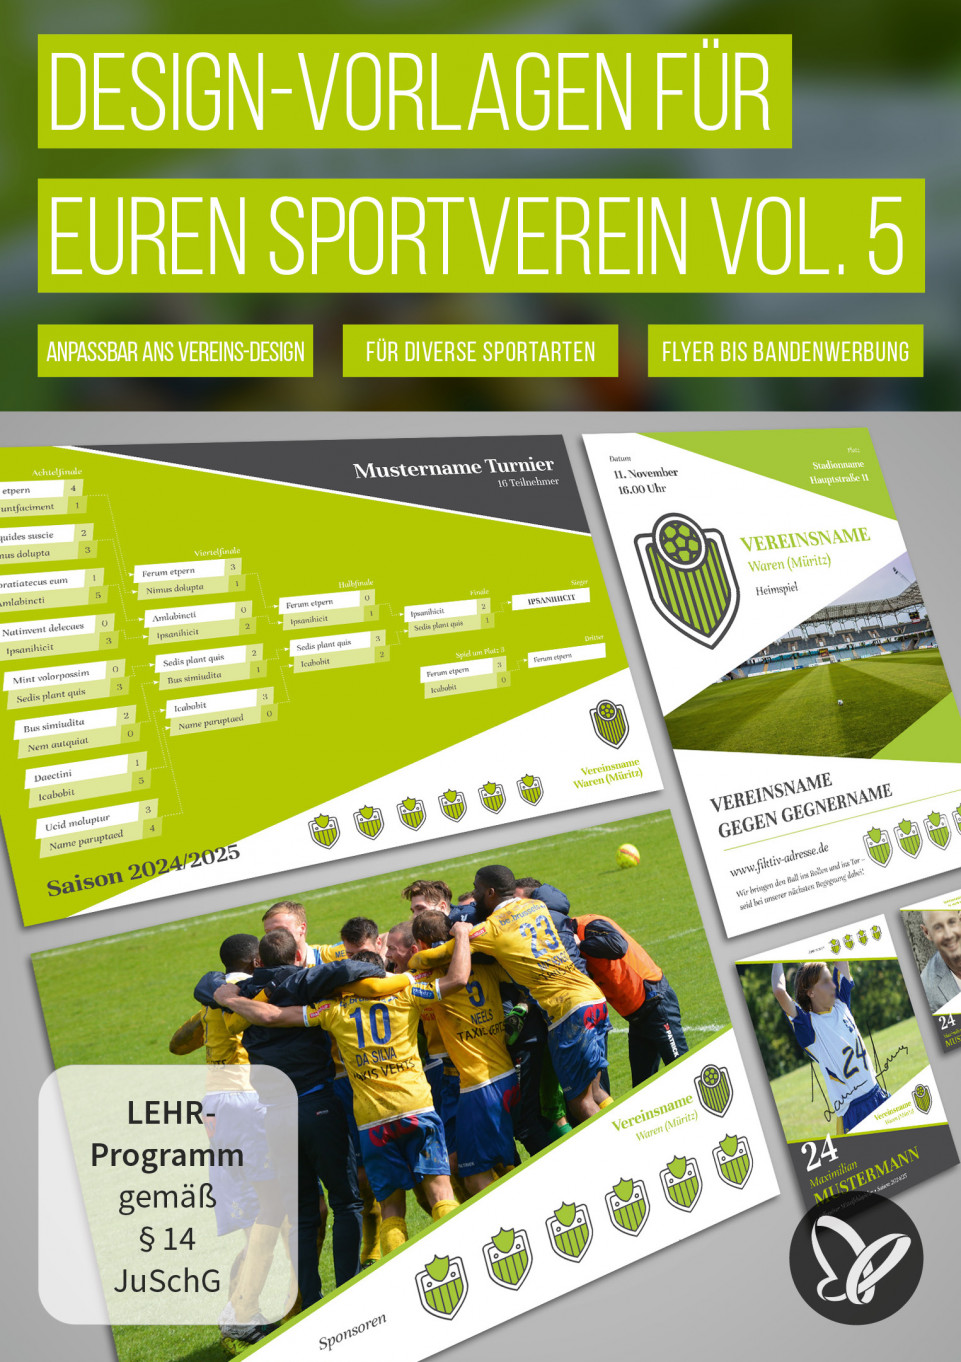 Design-Vorlagen für Sportvereine: Spendenscheck, Werbebanner & Co